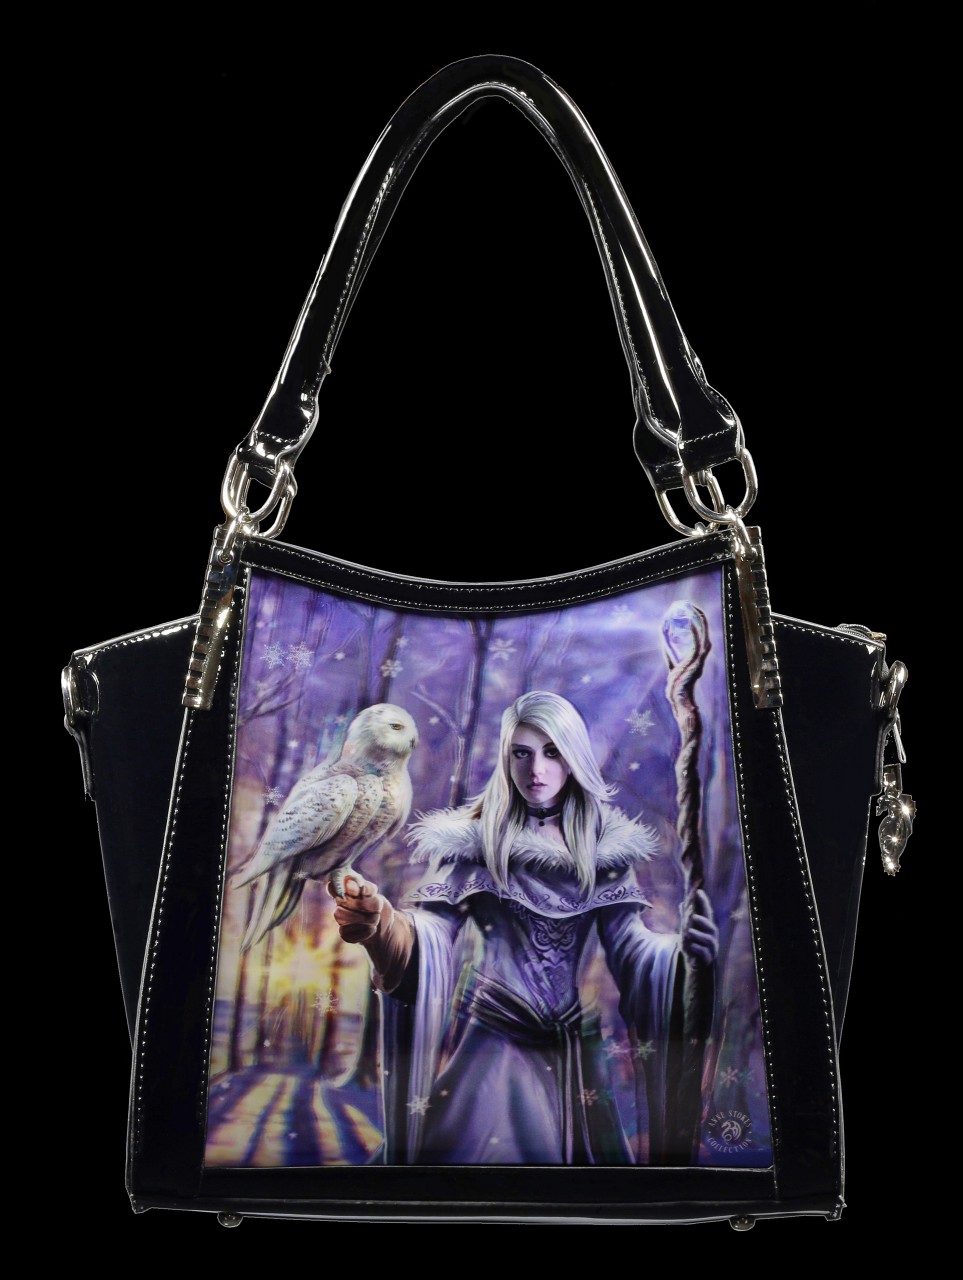 3D Fantasy Handbag - Winter Owl